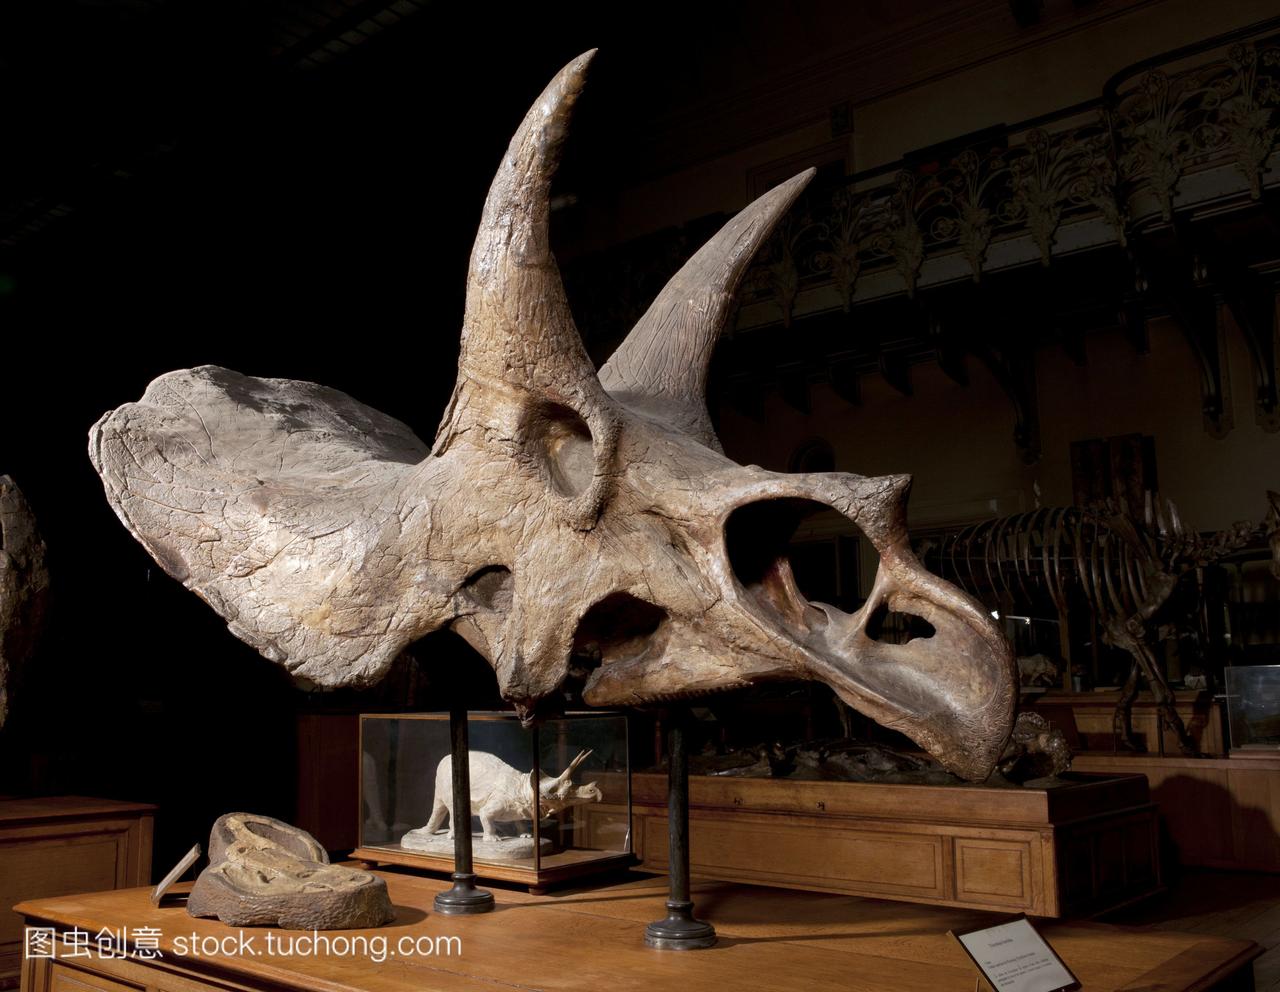 博物馆志愿者在整理霸王龙化石时发现新种鲨鱼 - 知乎